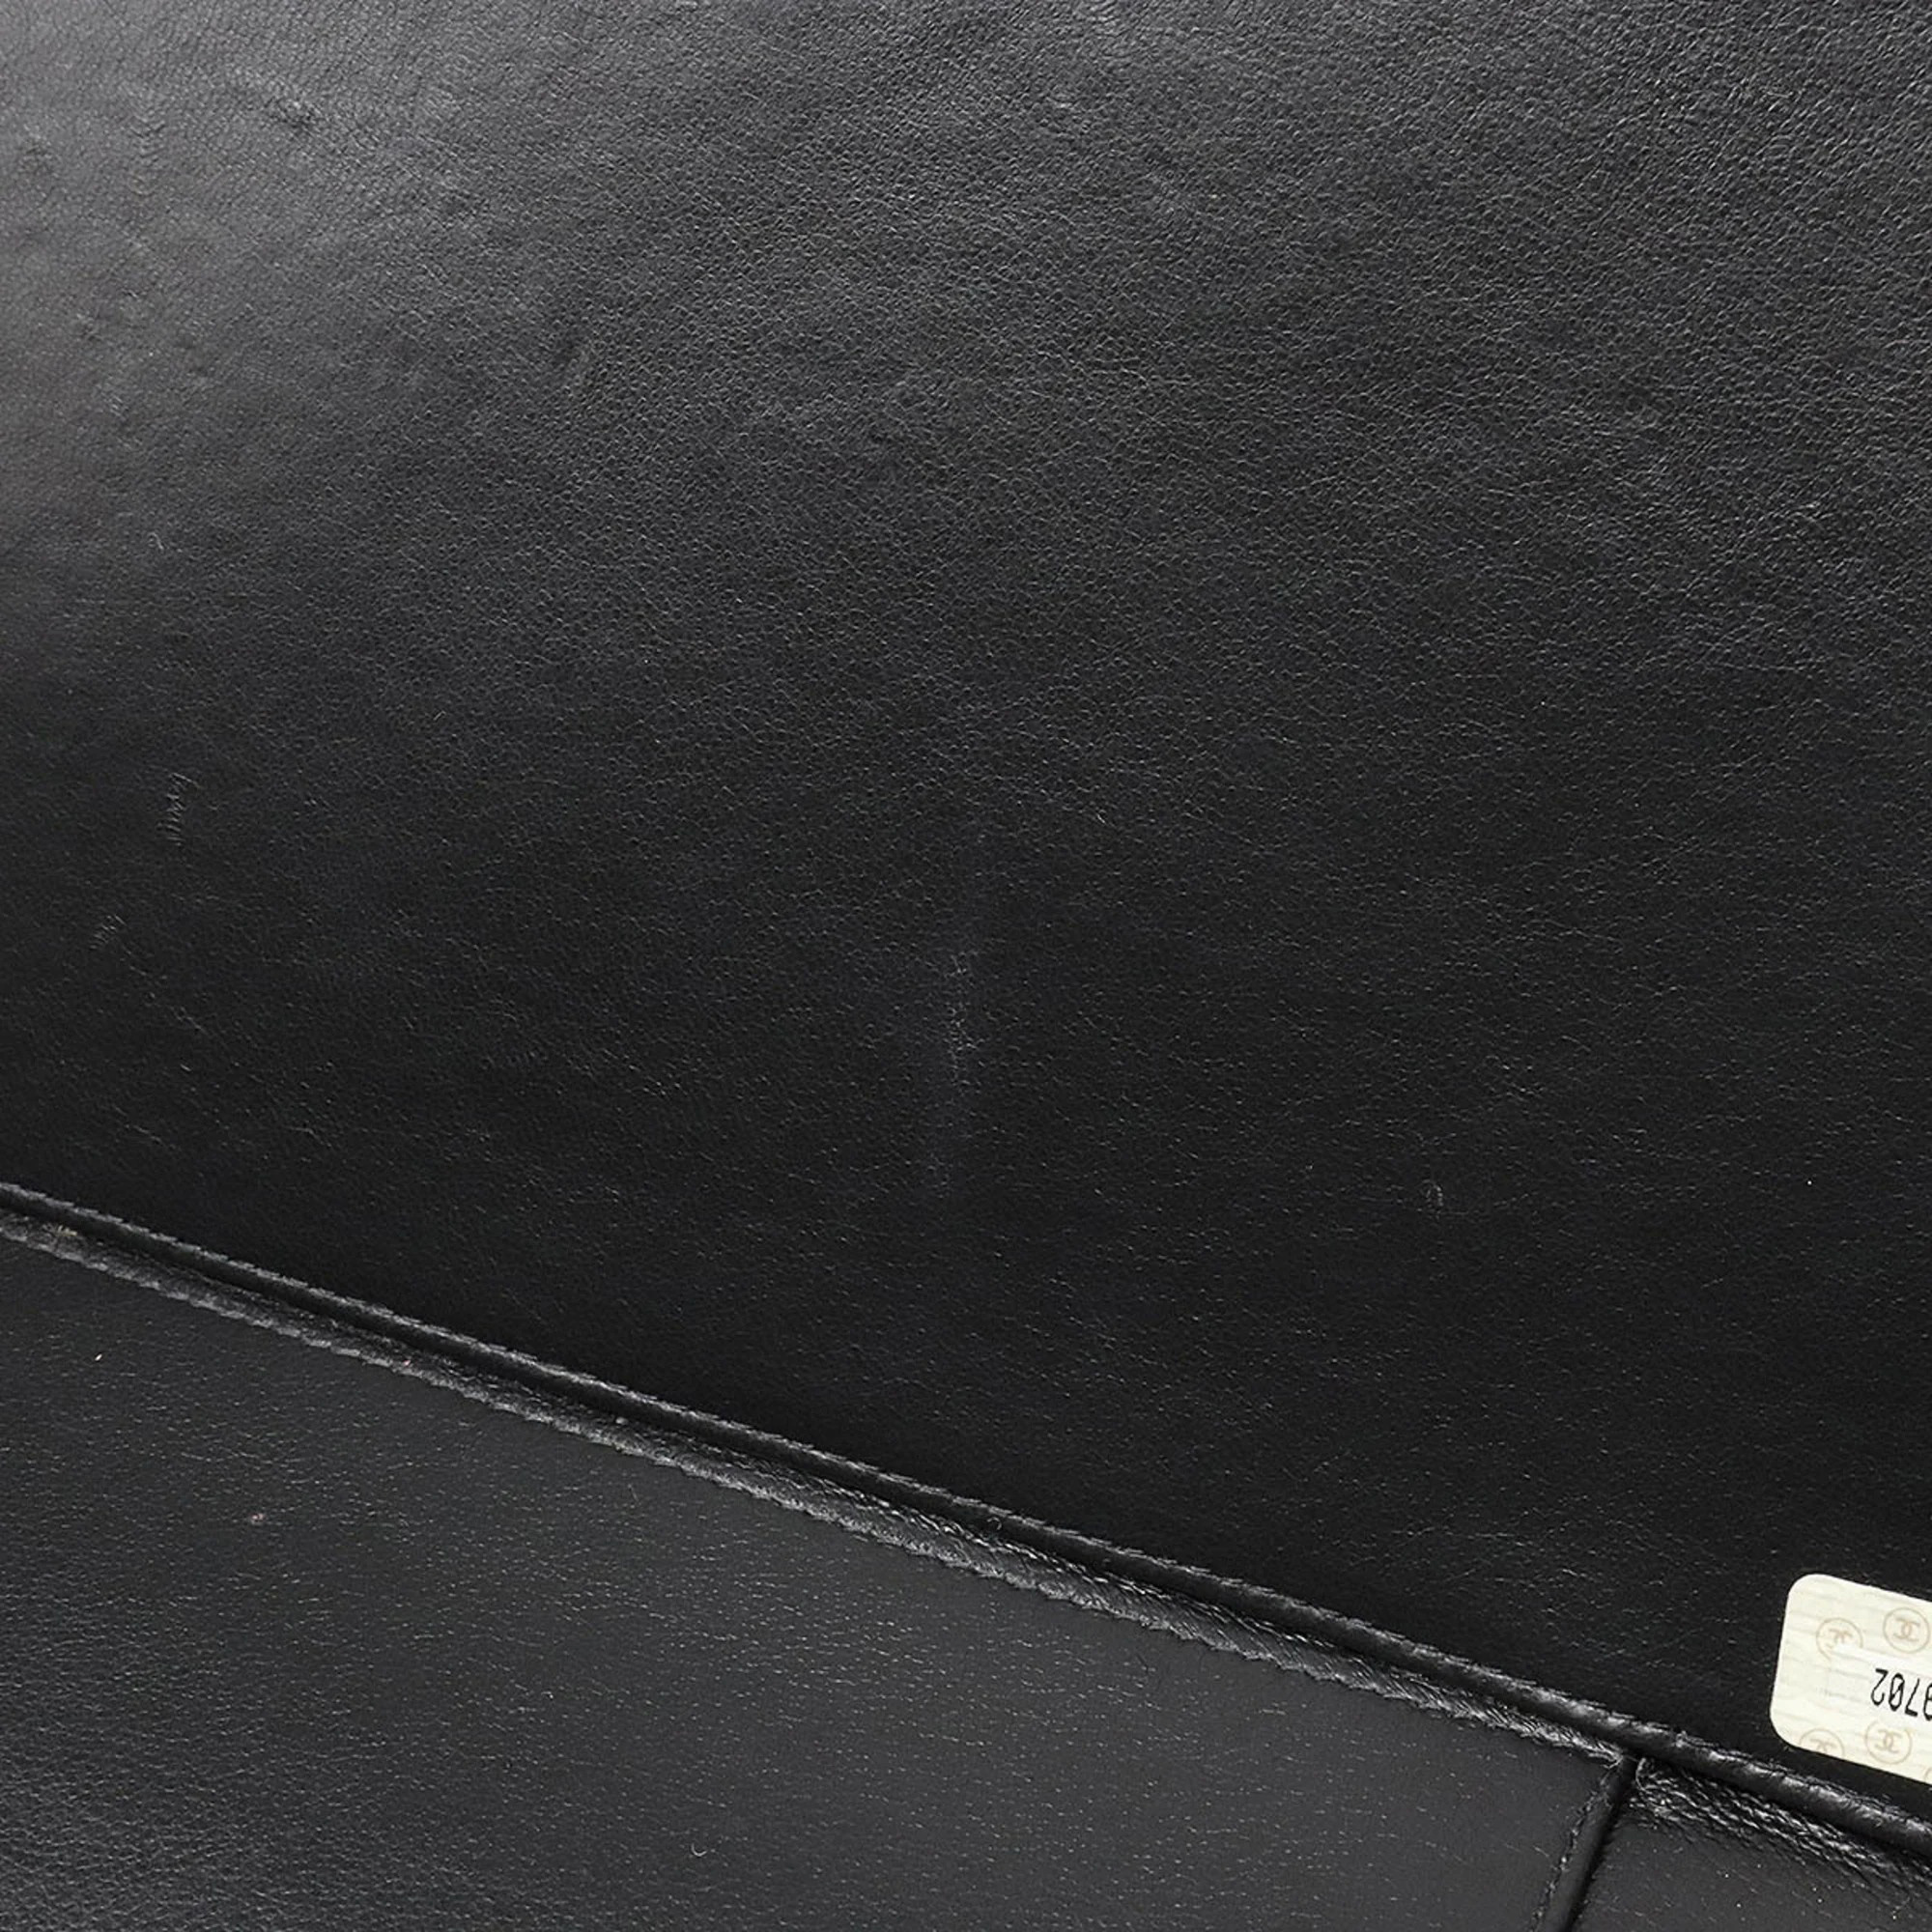 Chanel Black Patent Leather Vanity Case Shoulder Bag